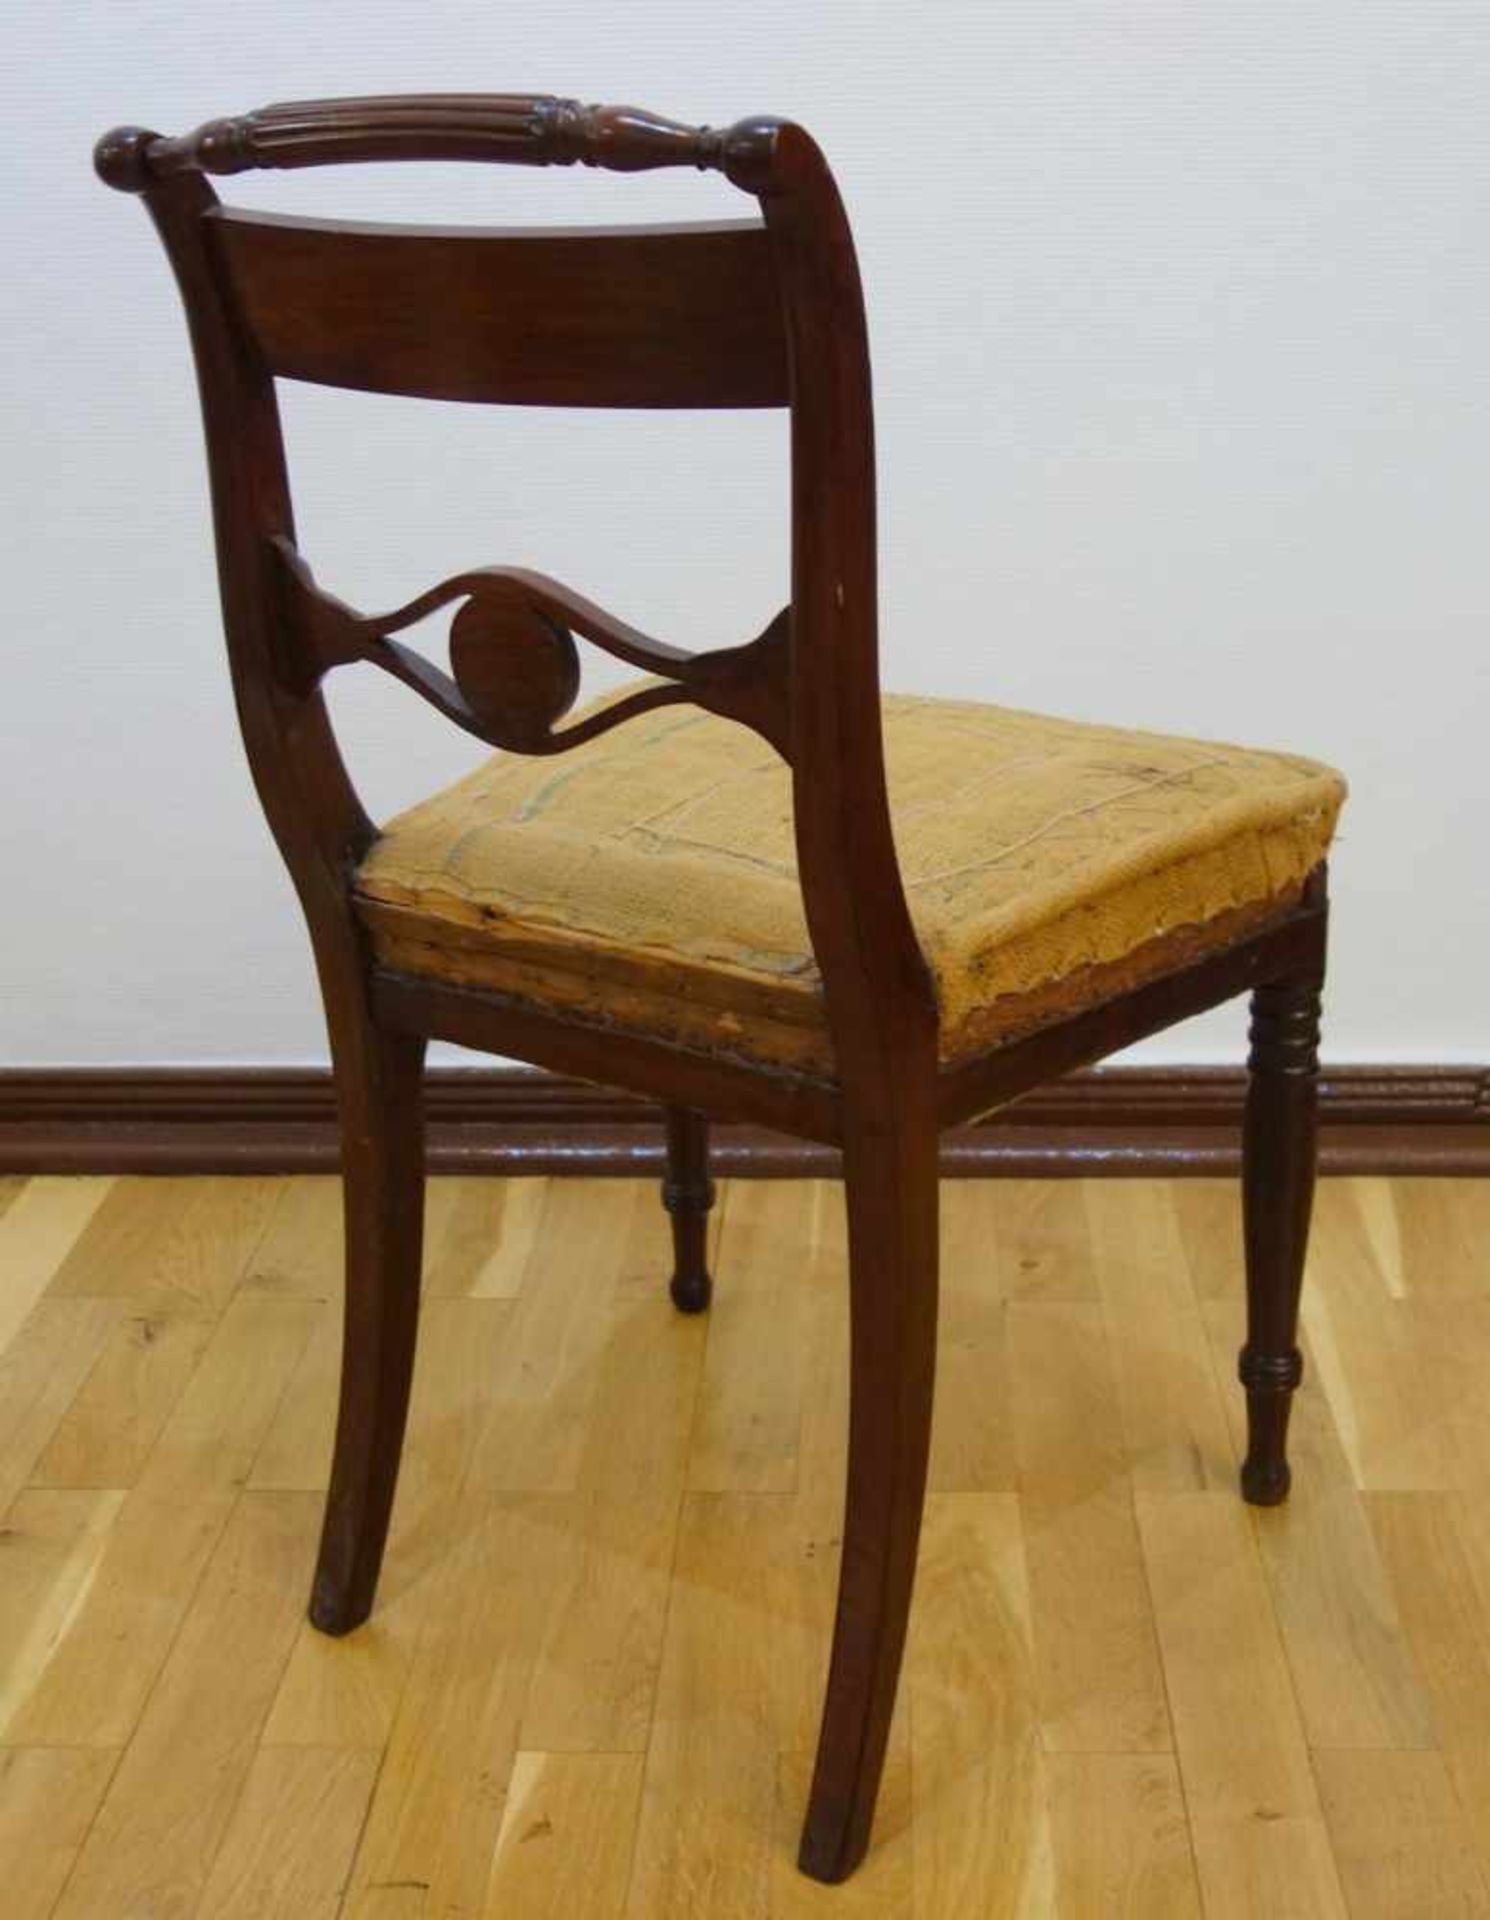 Stuhl, Biedermeier, um 1820Mahagoni, gepolstere Sitzfläche, Bezug zu ergänzen, restaurierter - Bild 2 aus 3